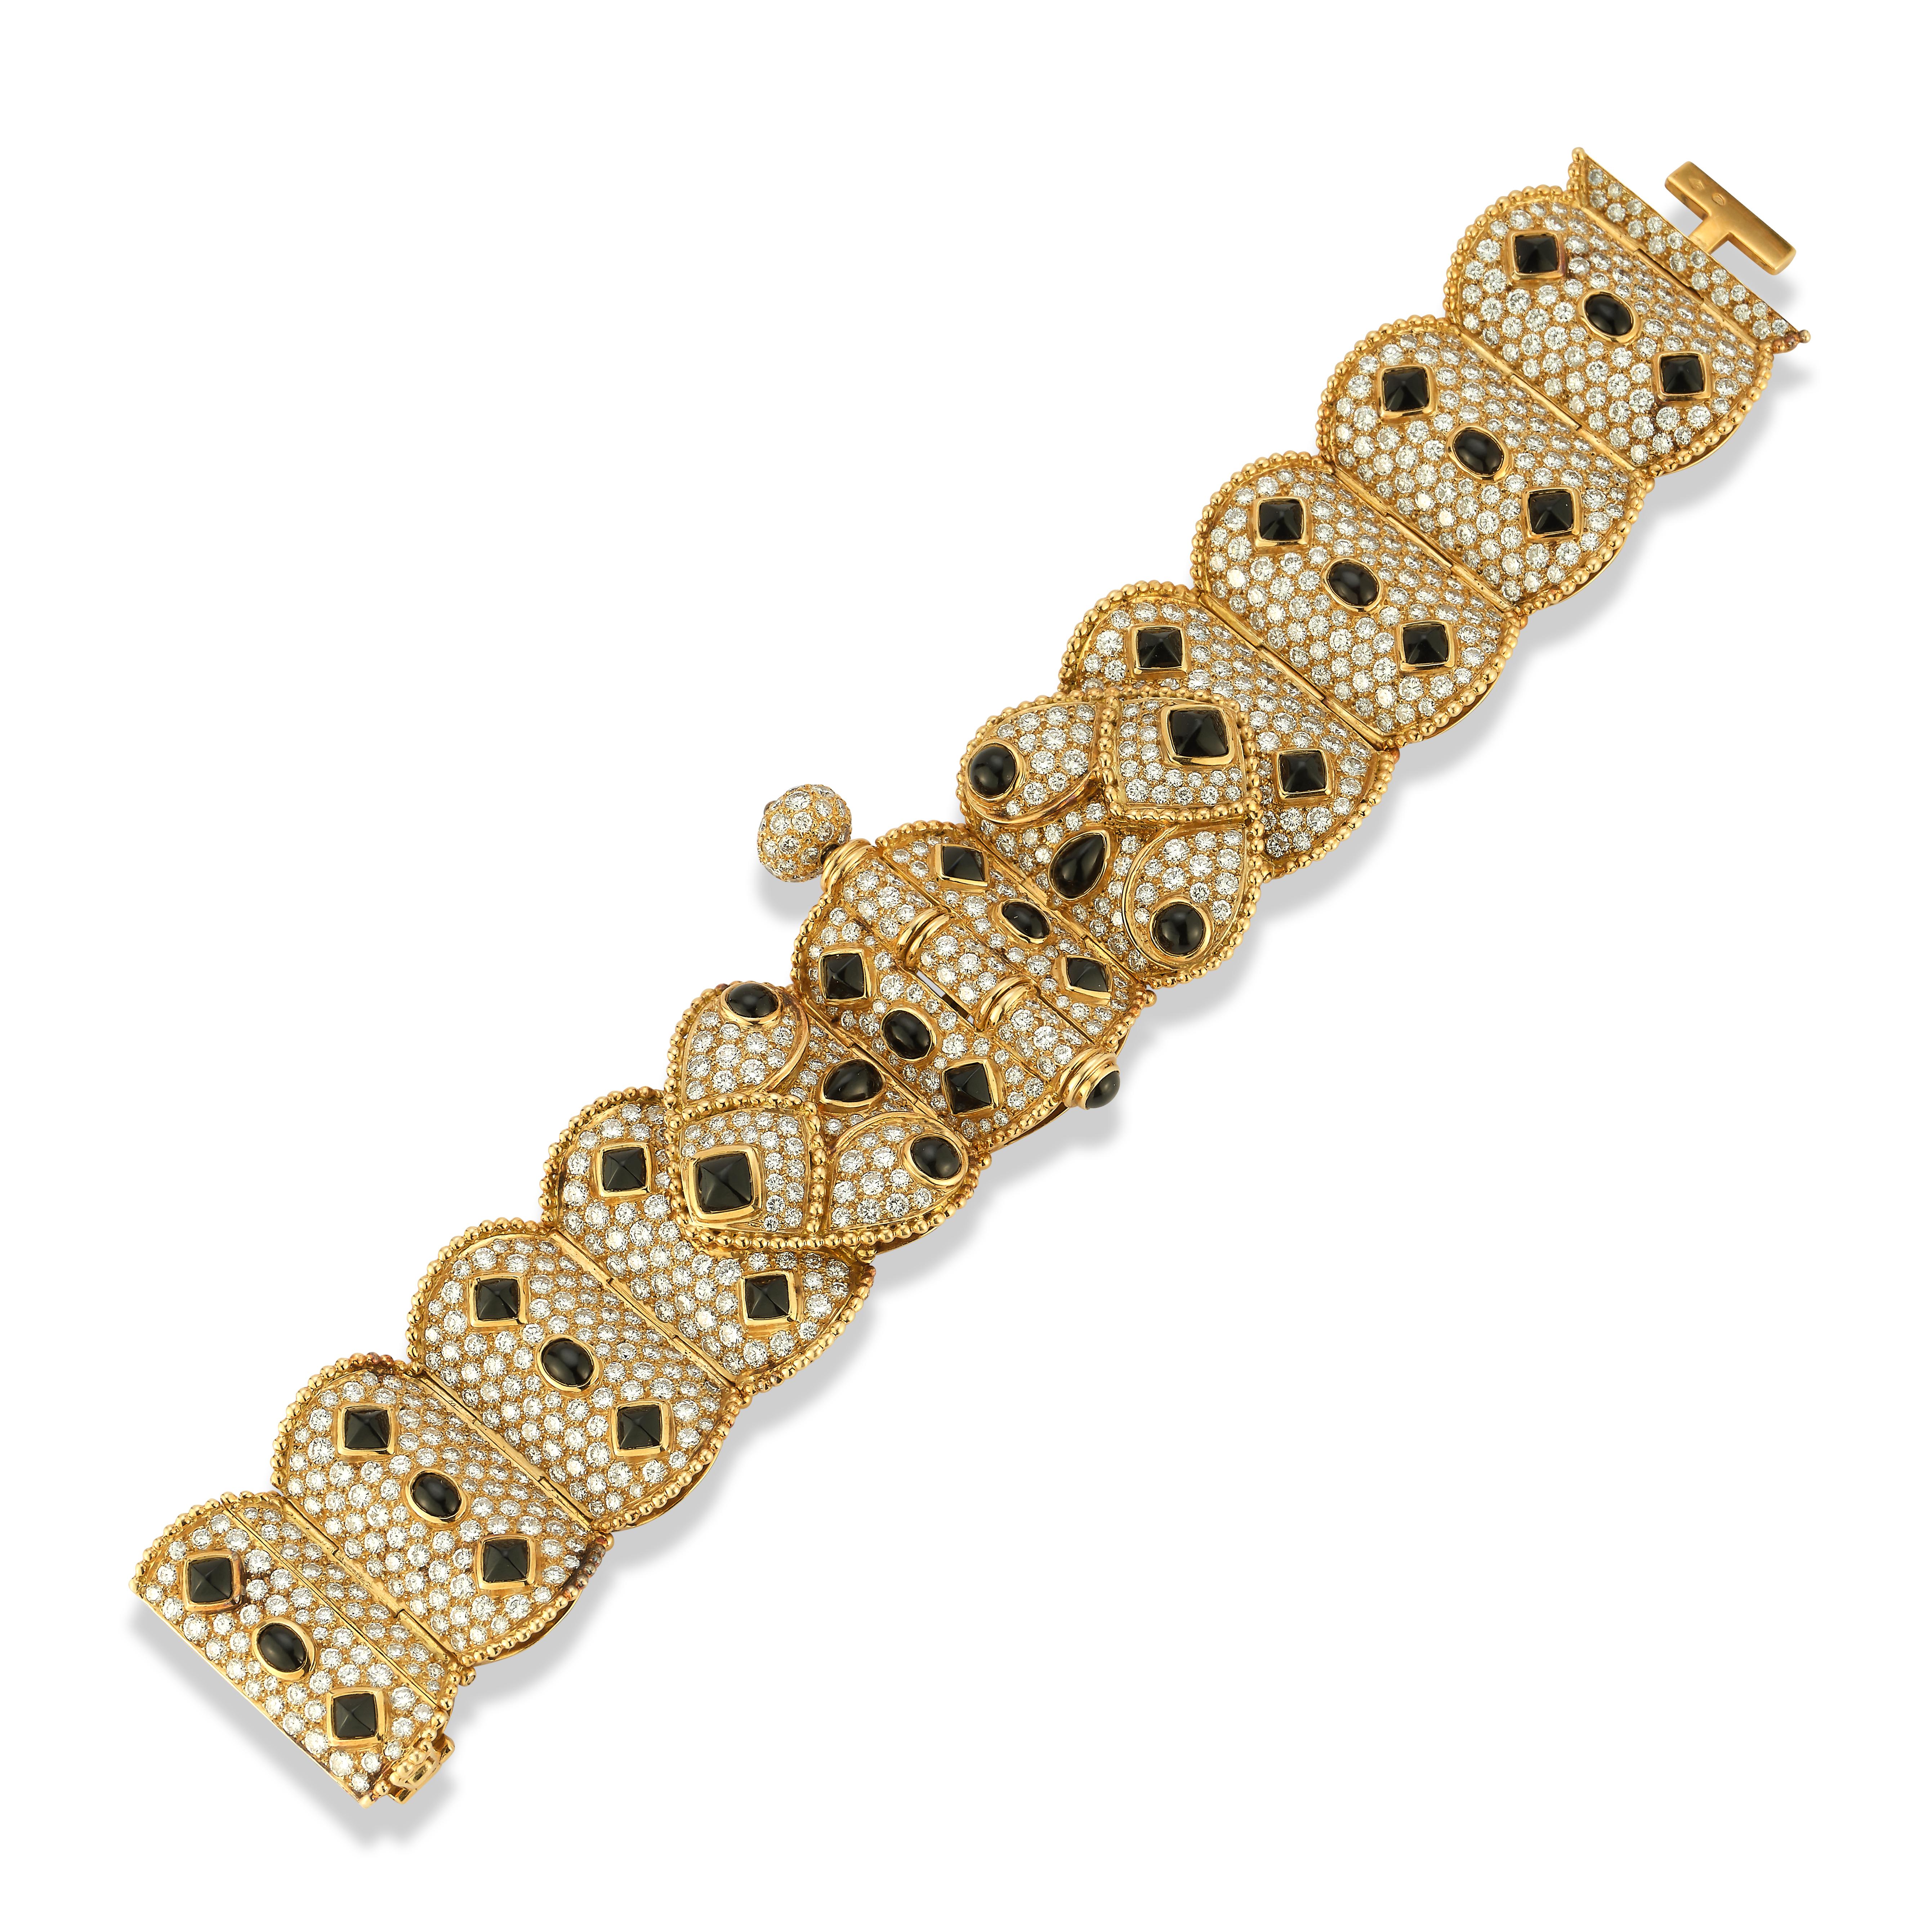 Boucheron Diamant & Onyx Goldarmband

Ein Armband aus 18 Karat Gold, besetzt mit 37 Onyxsteinen und 733 Diamanten im Rundschliff mit einem Gewicht von etwa 16,5 Karat

Signiert Boucheron

Abmessungen: 7.5